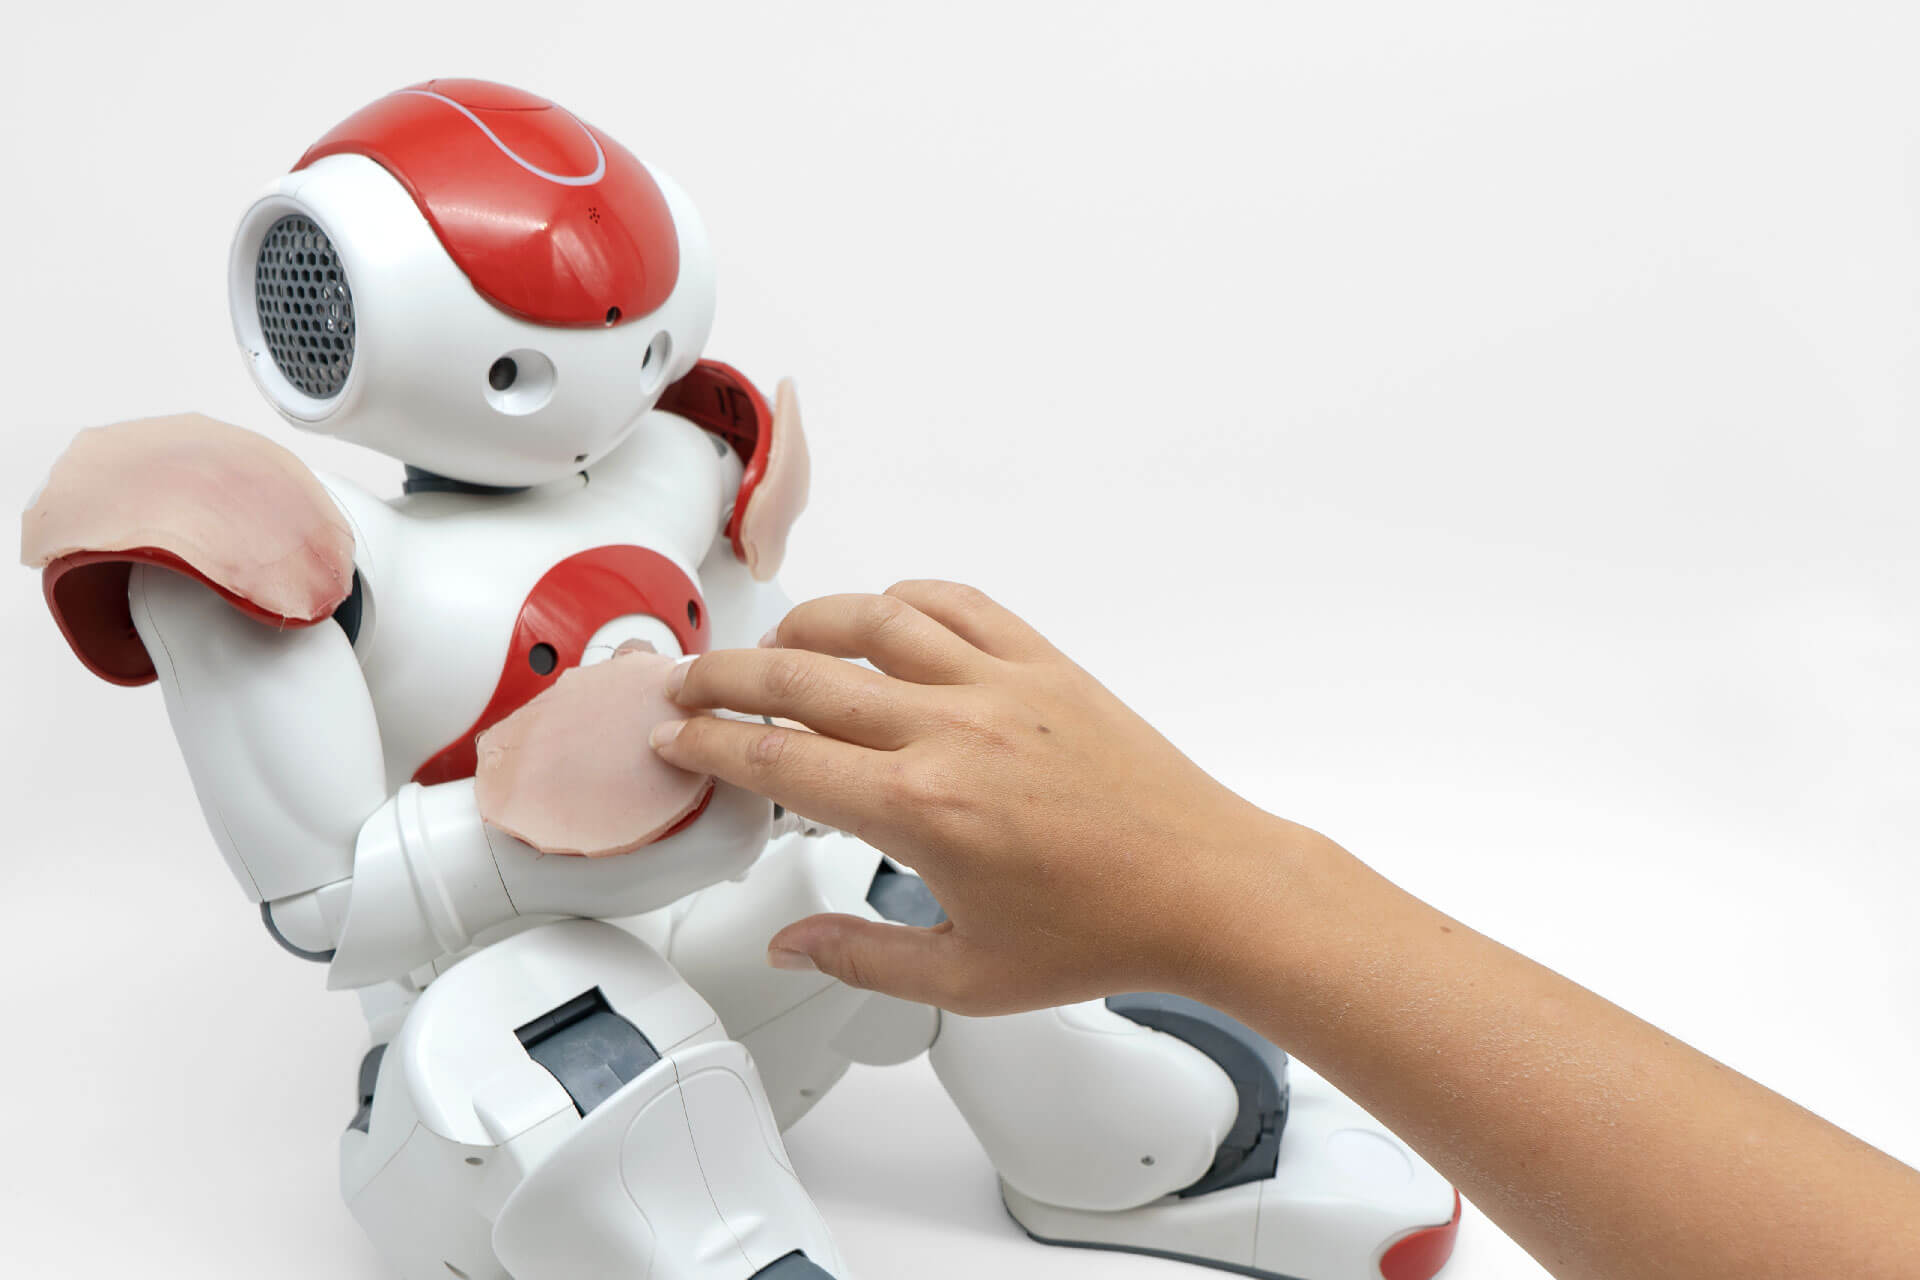 Pelle sviluppato per smartphone e robot umanoidi, risponde al tocco